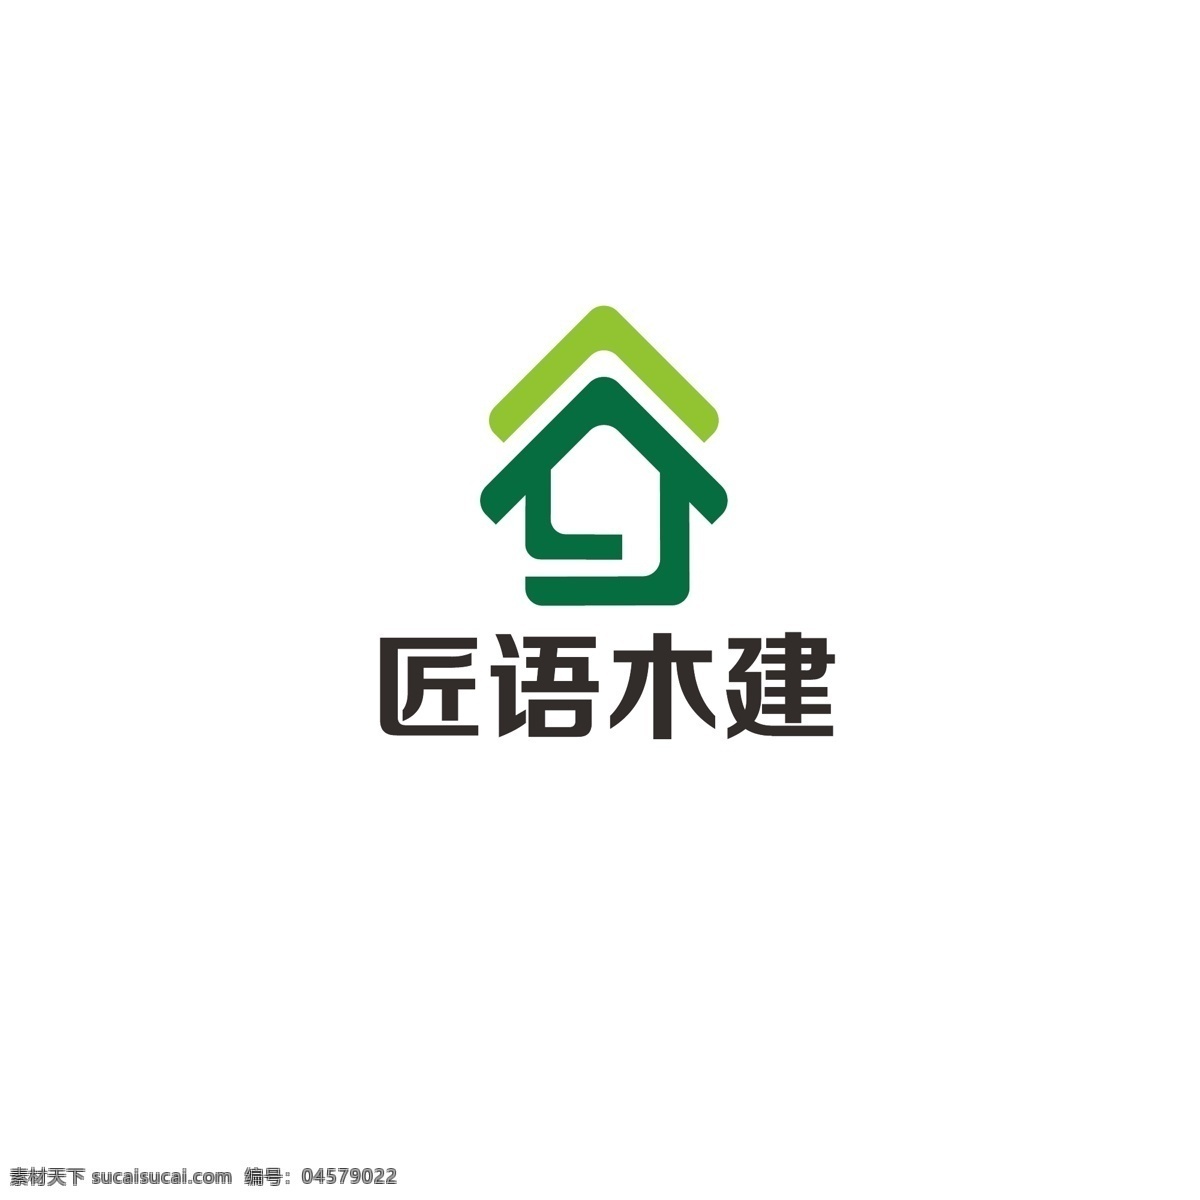 建筑 房产 logo 房子 地产 民居 字母j 简约绿色